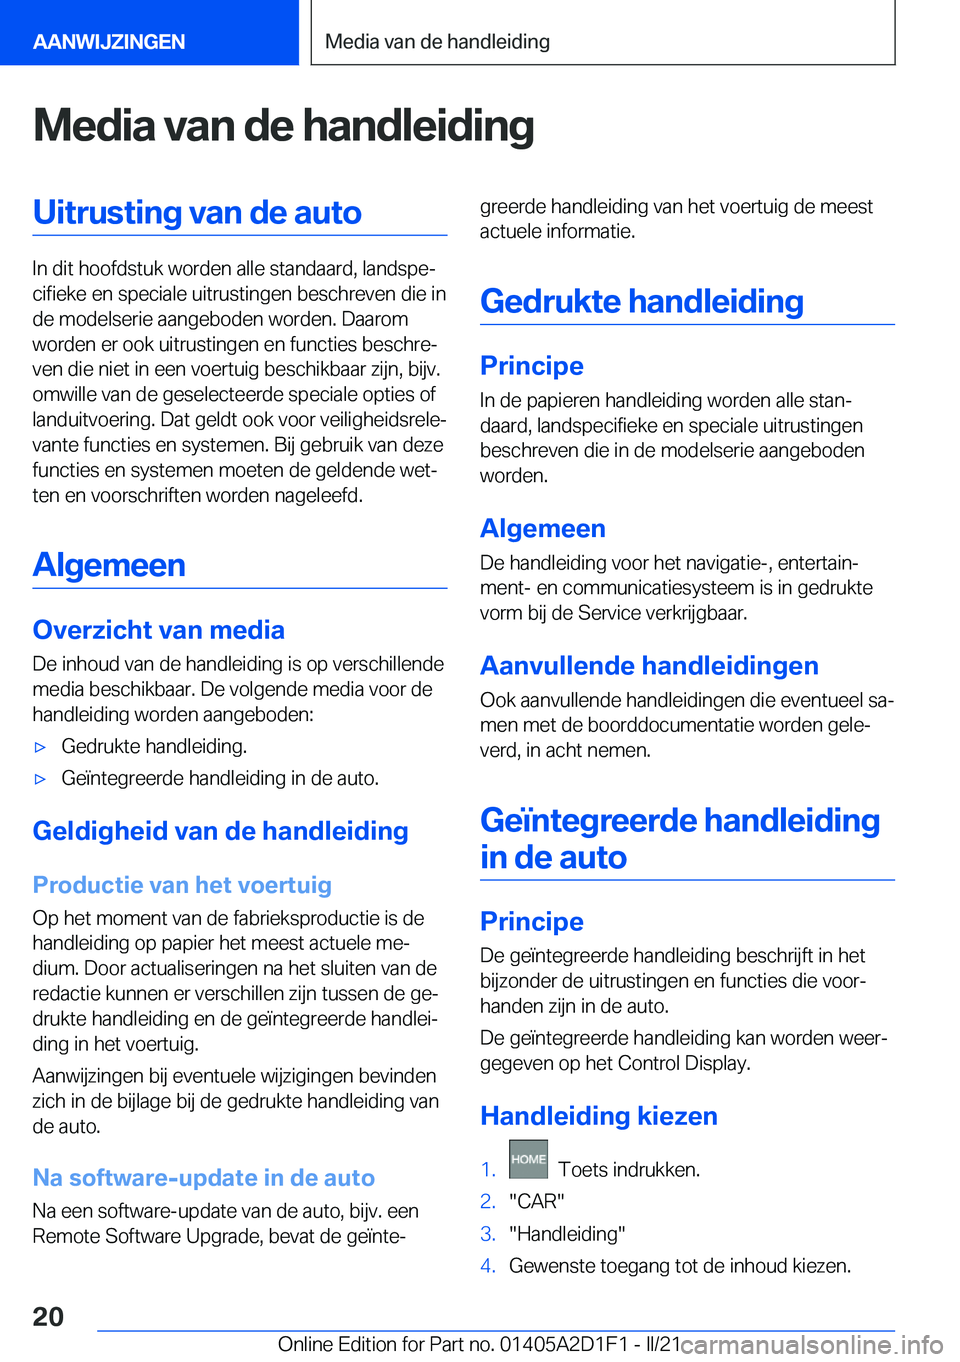 BMW X6 M 2021  Instructieboekjes (in Dutch) �M�e�d�i�a��v�a�n��d�e��h�a�n�d�l�e�i�d�i�n�g�U�i�t�r�u�s�t�i�n�g��v�a�n��d�e��a�u�t�o
�I�n��d�i�t��h�o�o�f�d�s�t�u�k��w�o�r�d�e�n��a�l�l�e��s�t�a�n�d�a�a�r�d�,��l�a�n�d�s�p�ej�c�i�f�i�e�